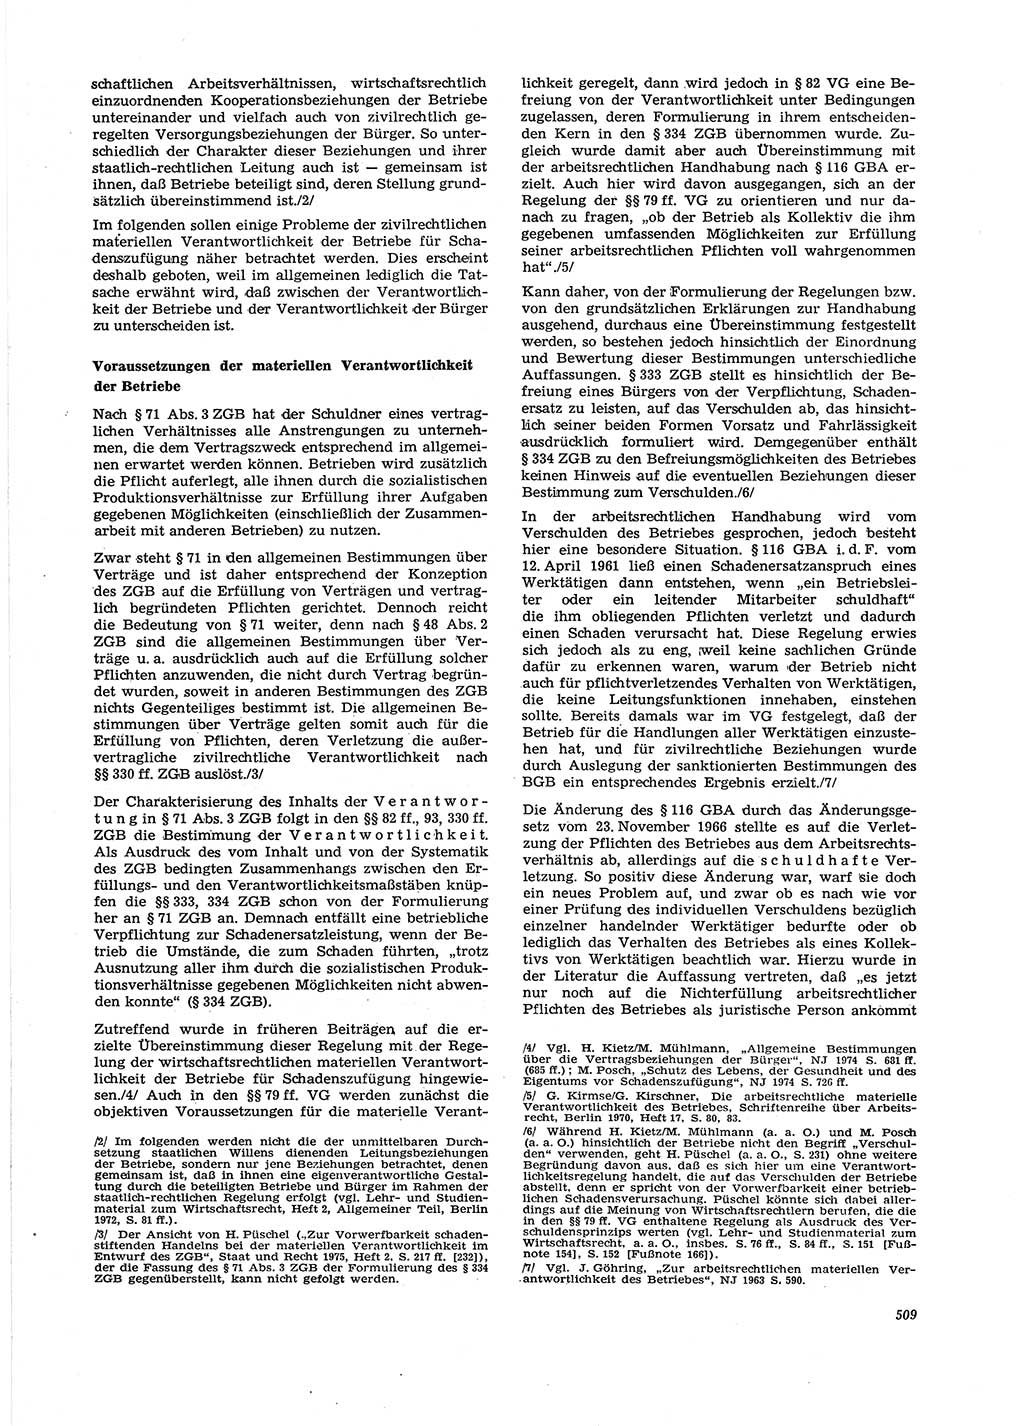 Neue Justiz (NJ), Zeitschrift für Recht und Rechtswissenschaft [Deutsche Demokratische Republik (DDR)], 29. Jahrgang 1975, Seite 509 (NJ DDR 1975, S. 509)